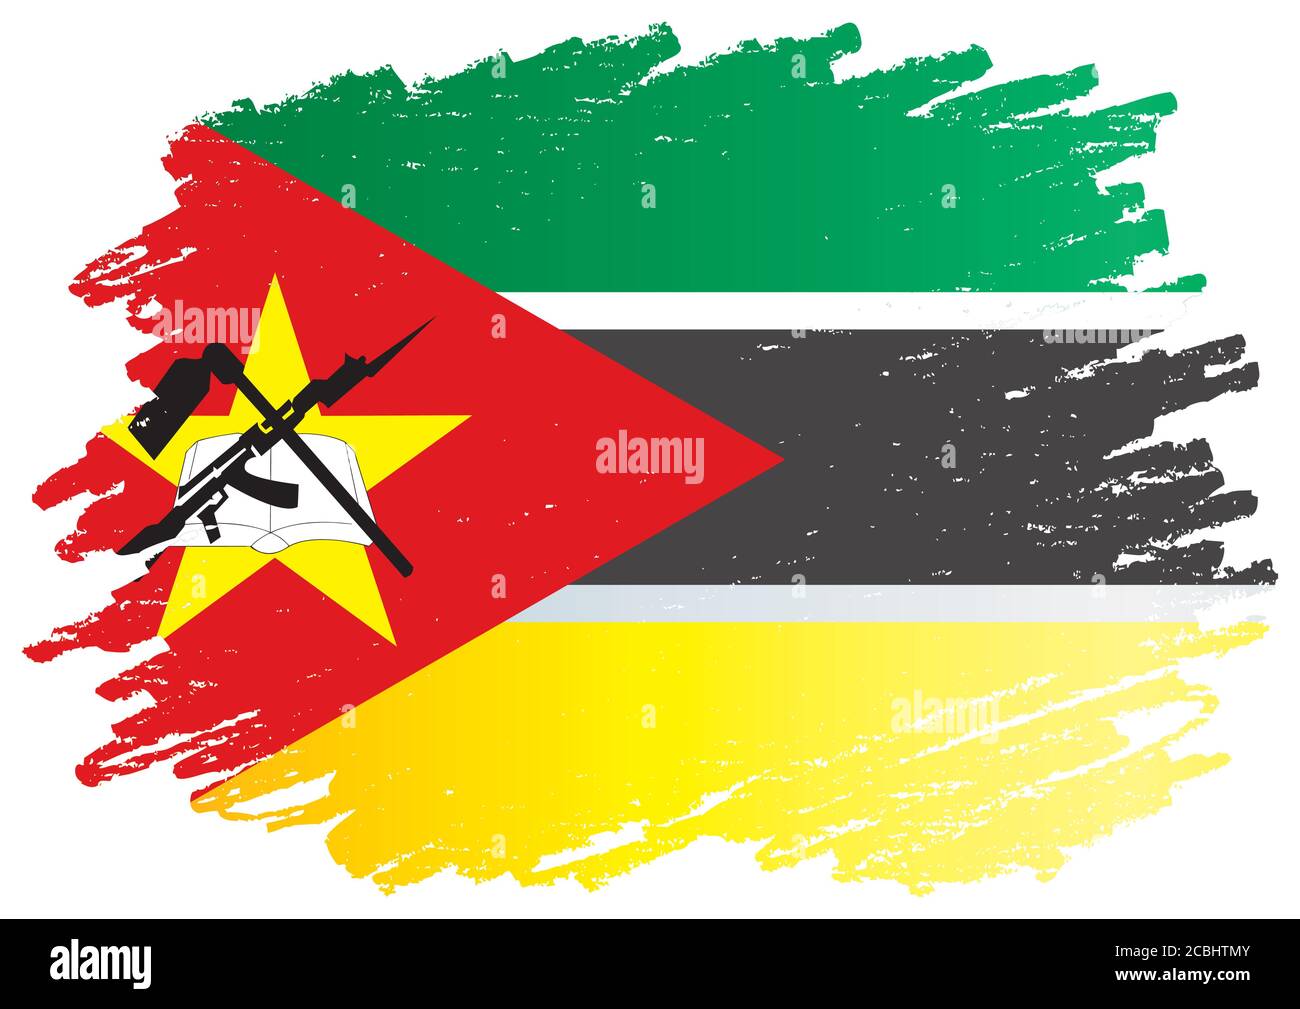 Drapeau du Mozambique, République du Mozambique. Modèle pour la conception des prix, un document officiel avec le drapeau du Mozambique. Vecteur lumineux et coloré Illustration de Vecteur